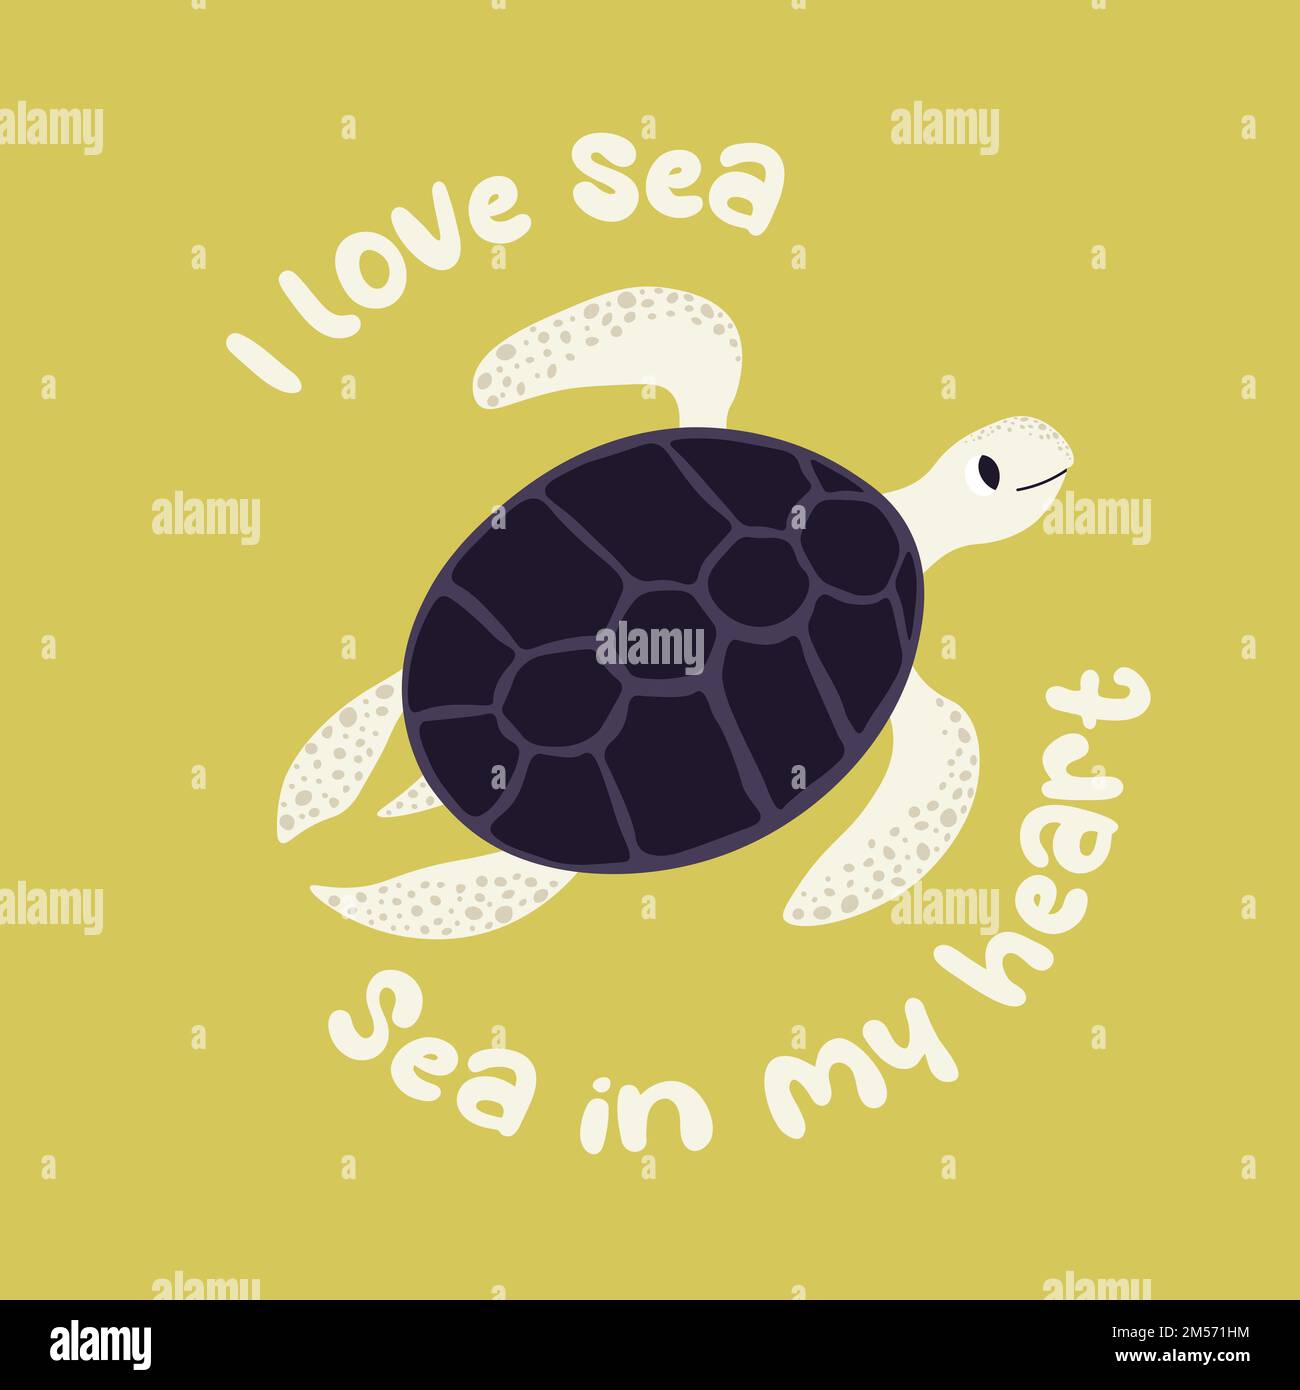 Vektor-Ozean-Illustration mit Schildkröte. Ich liebe das Meer, das Meer in meinem Herzen - moderne Schriftzeichen. Unterwassertiere. Ökologisches Design für Banner, Flyer Stock Vektor